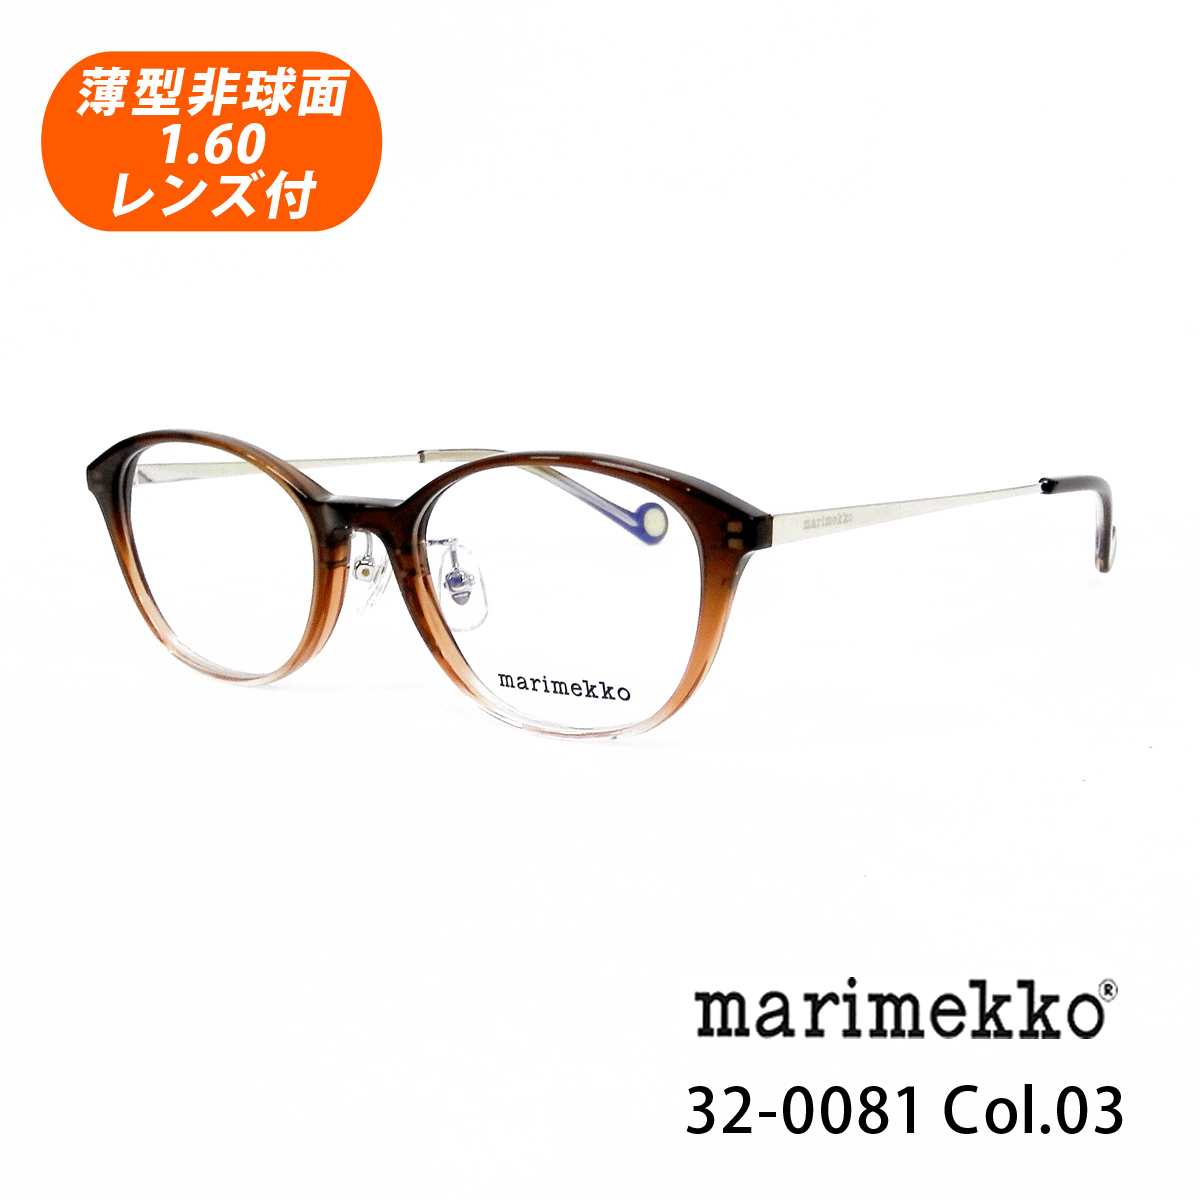 薄型非球面レンズ付【marimekko マリメッコ 32-0081 Col.03（ブラウングラデ）Kiira】